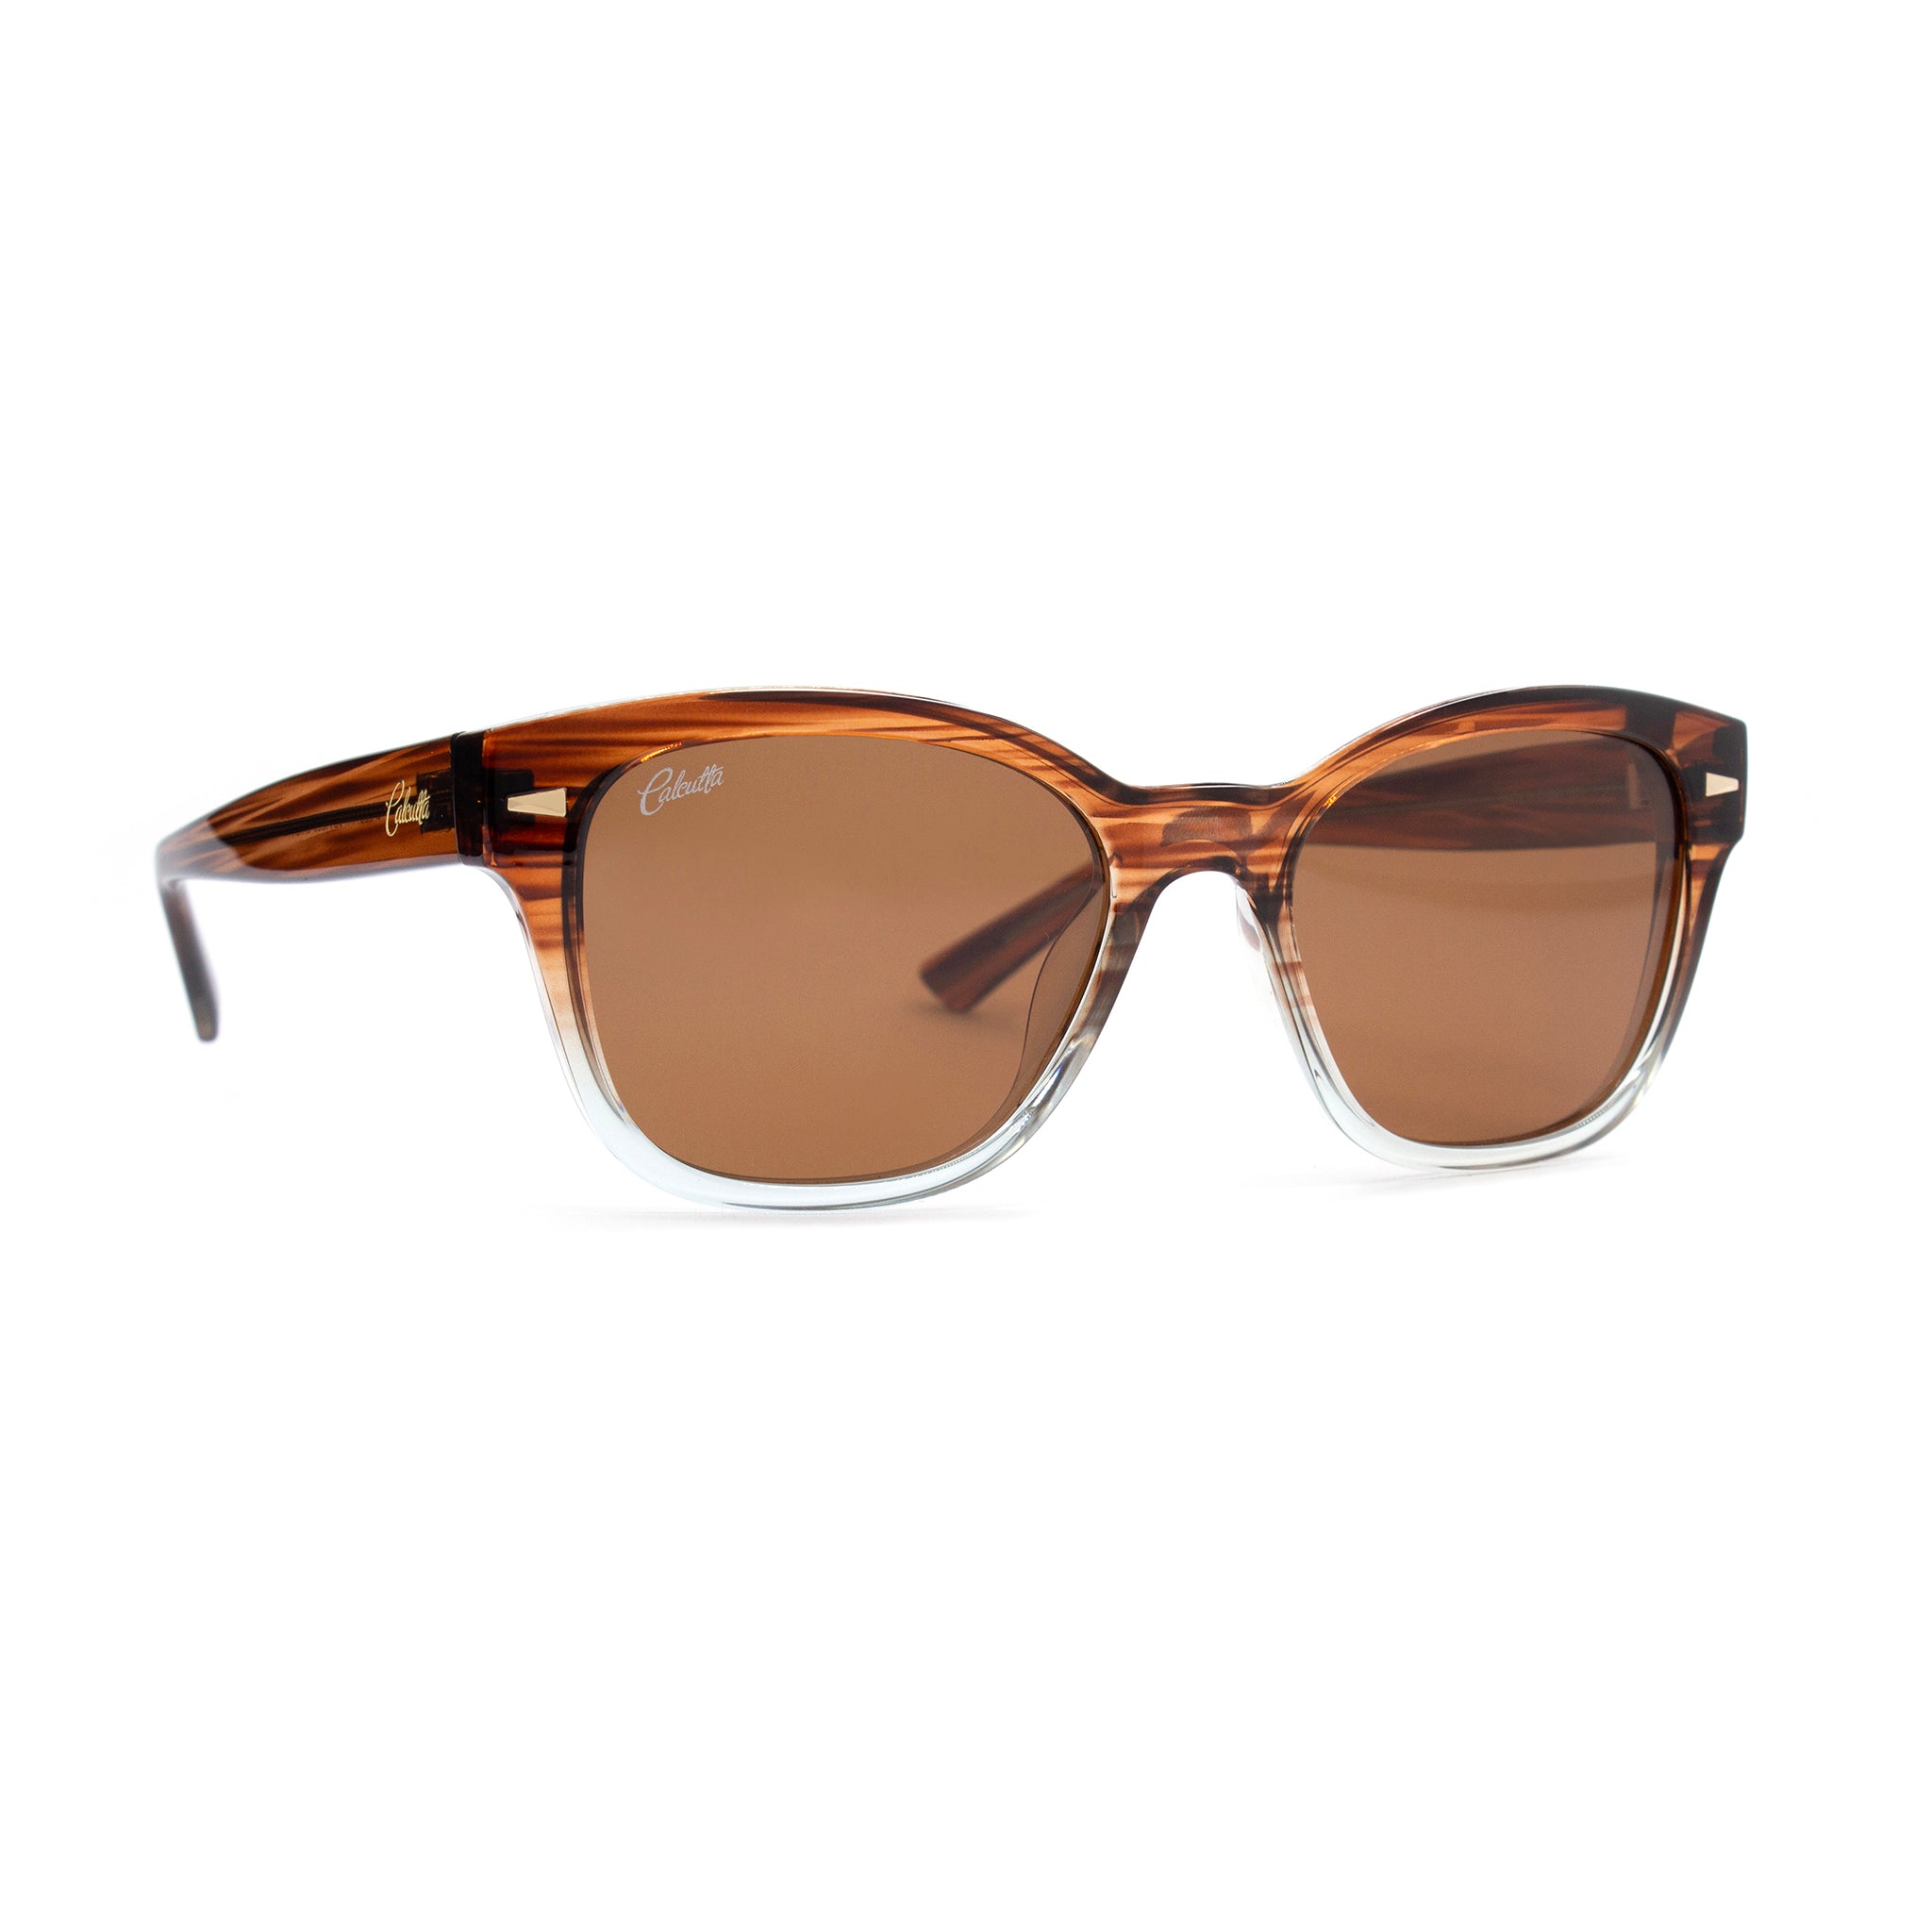 Calcutta Chica sunglasses brown lens